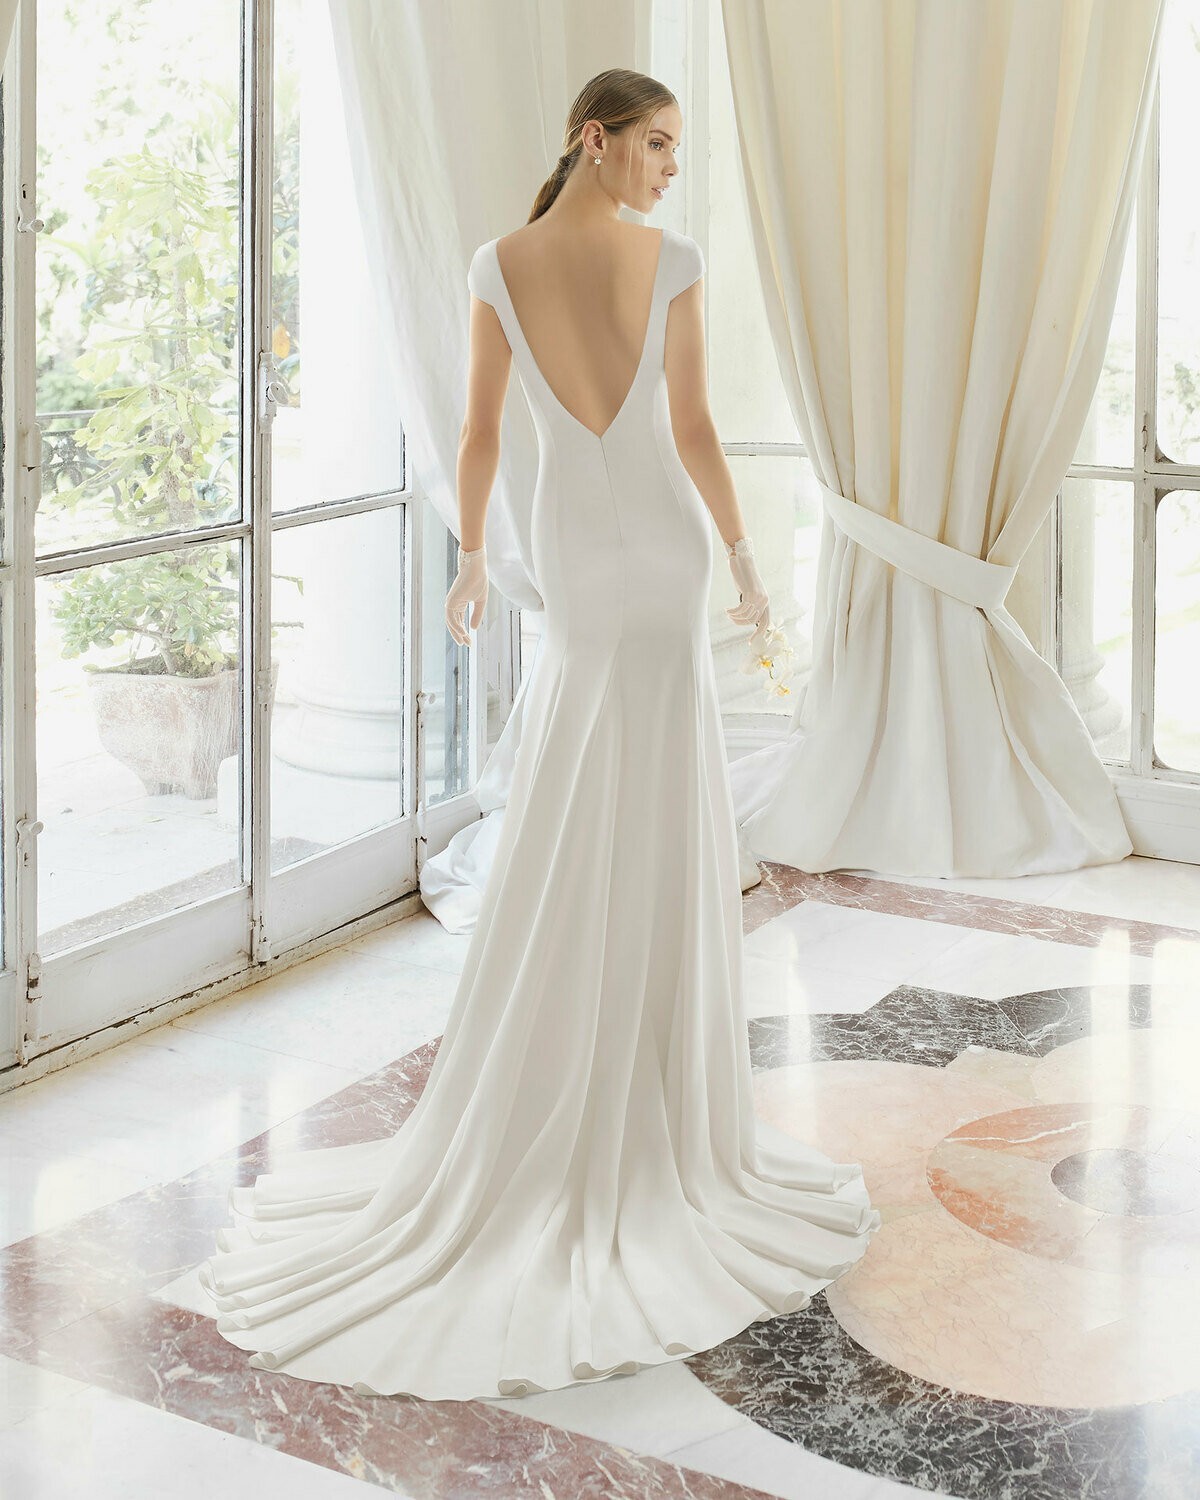 DYLAN - abito da sposa collezione 2020 - Rosa Clarà Couture